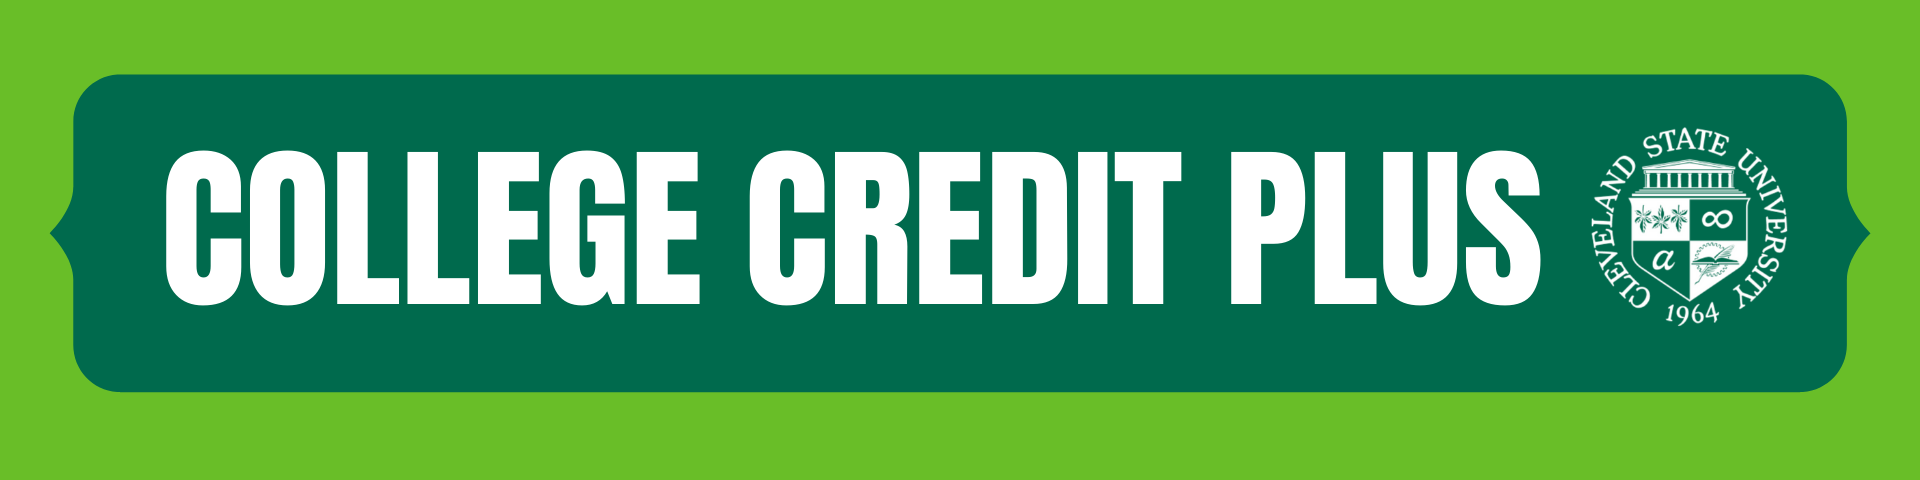 Tri-C College Credit Plus Program: Cleveland, Ohio